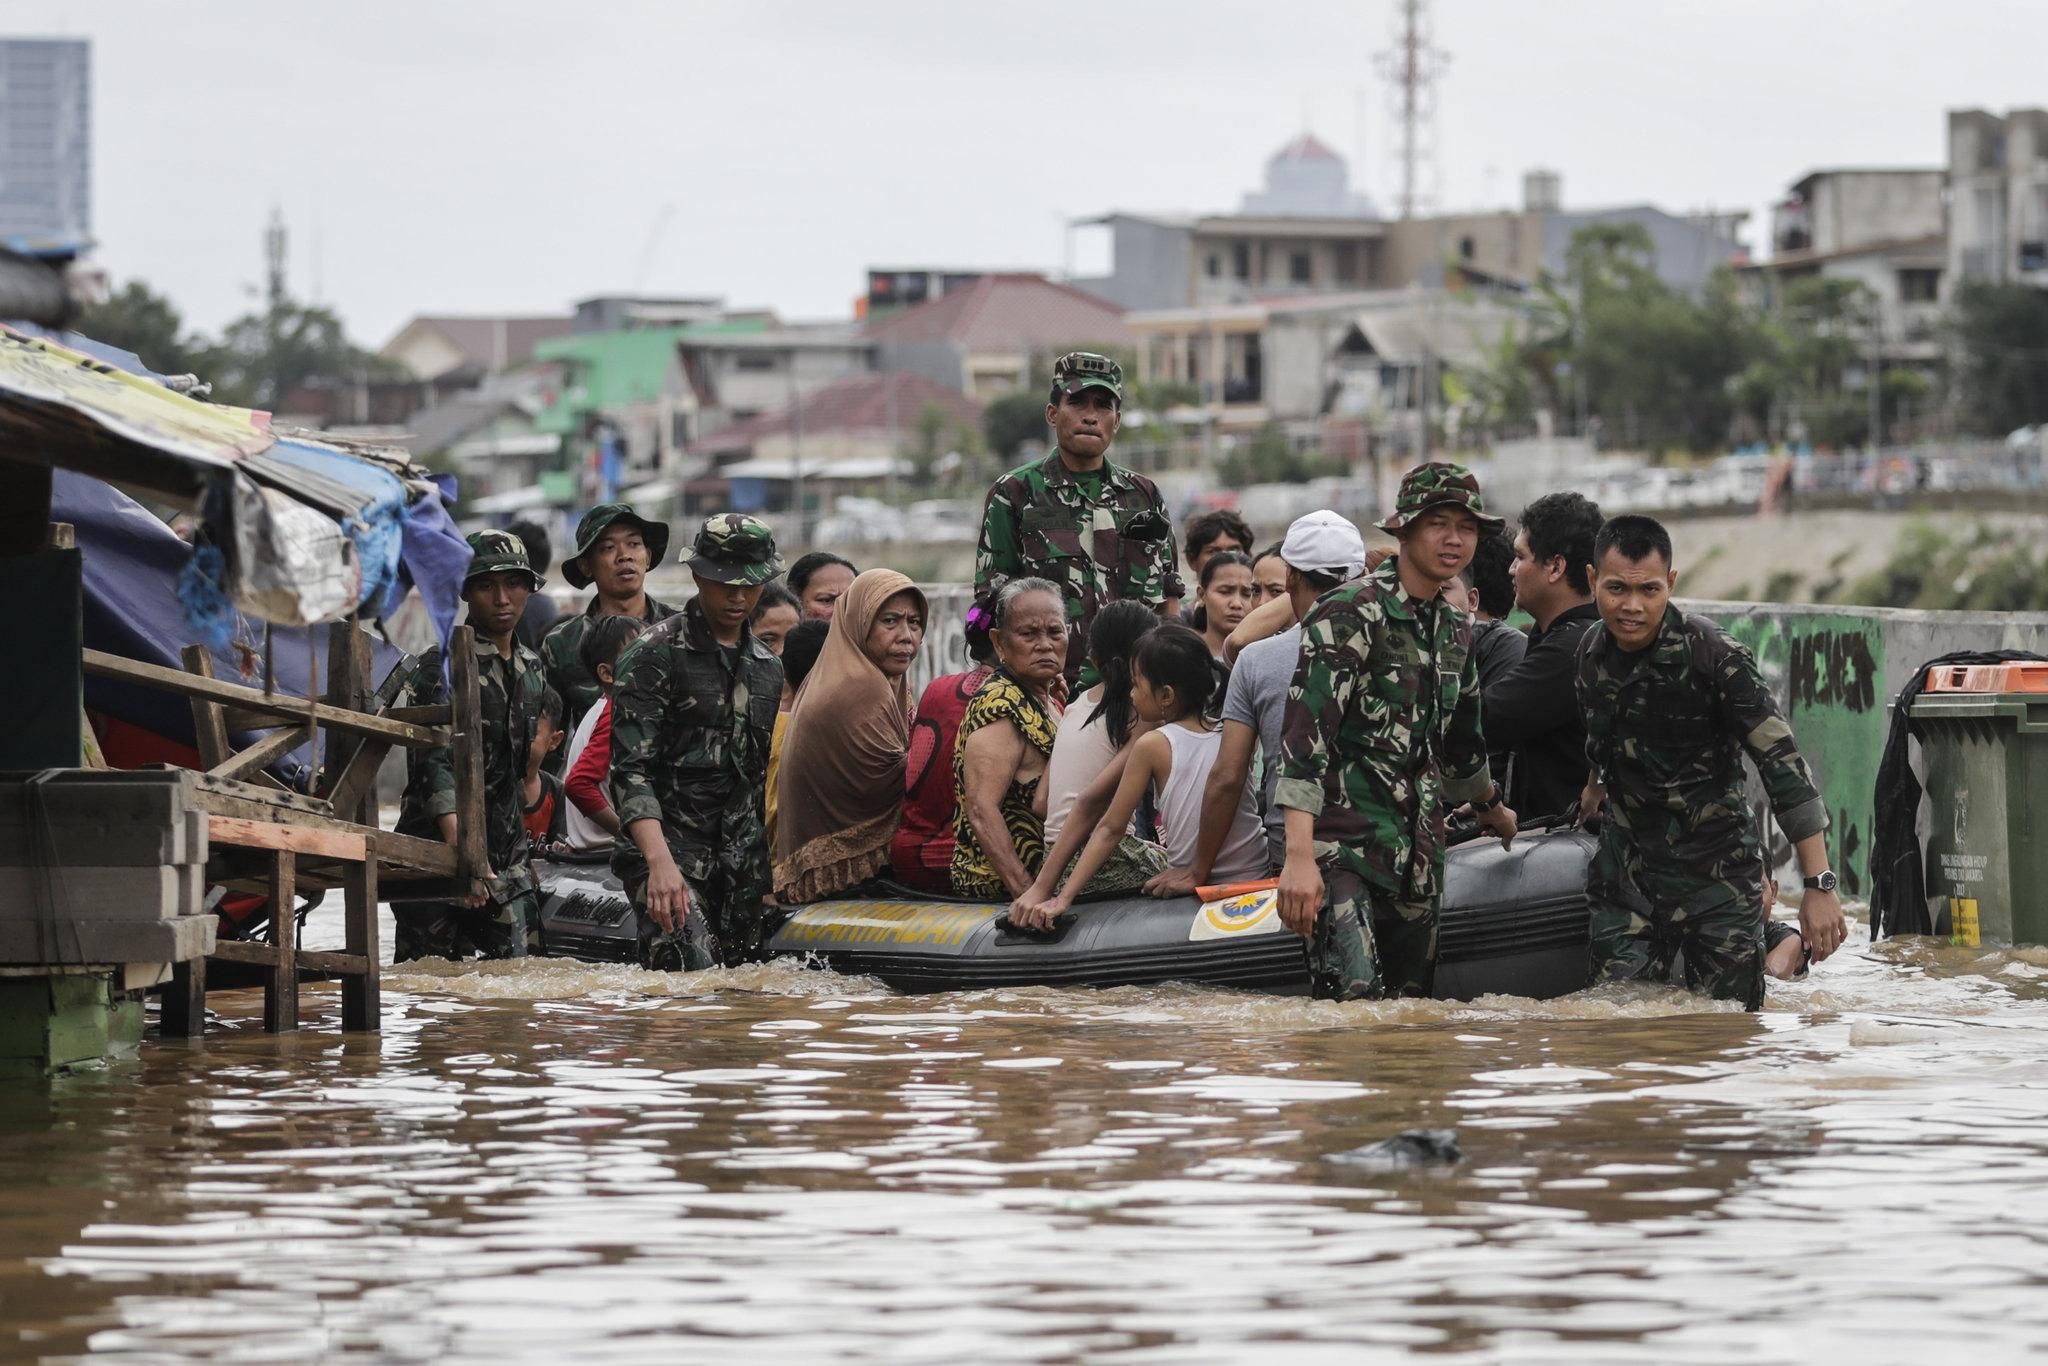 Оползни и наводнения в Индонезии 4.04.2021: погибли 20 человек, 5 пропали